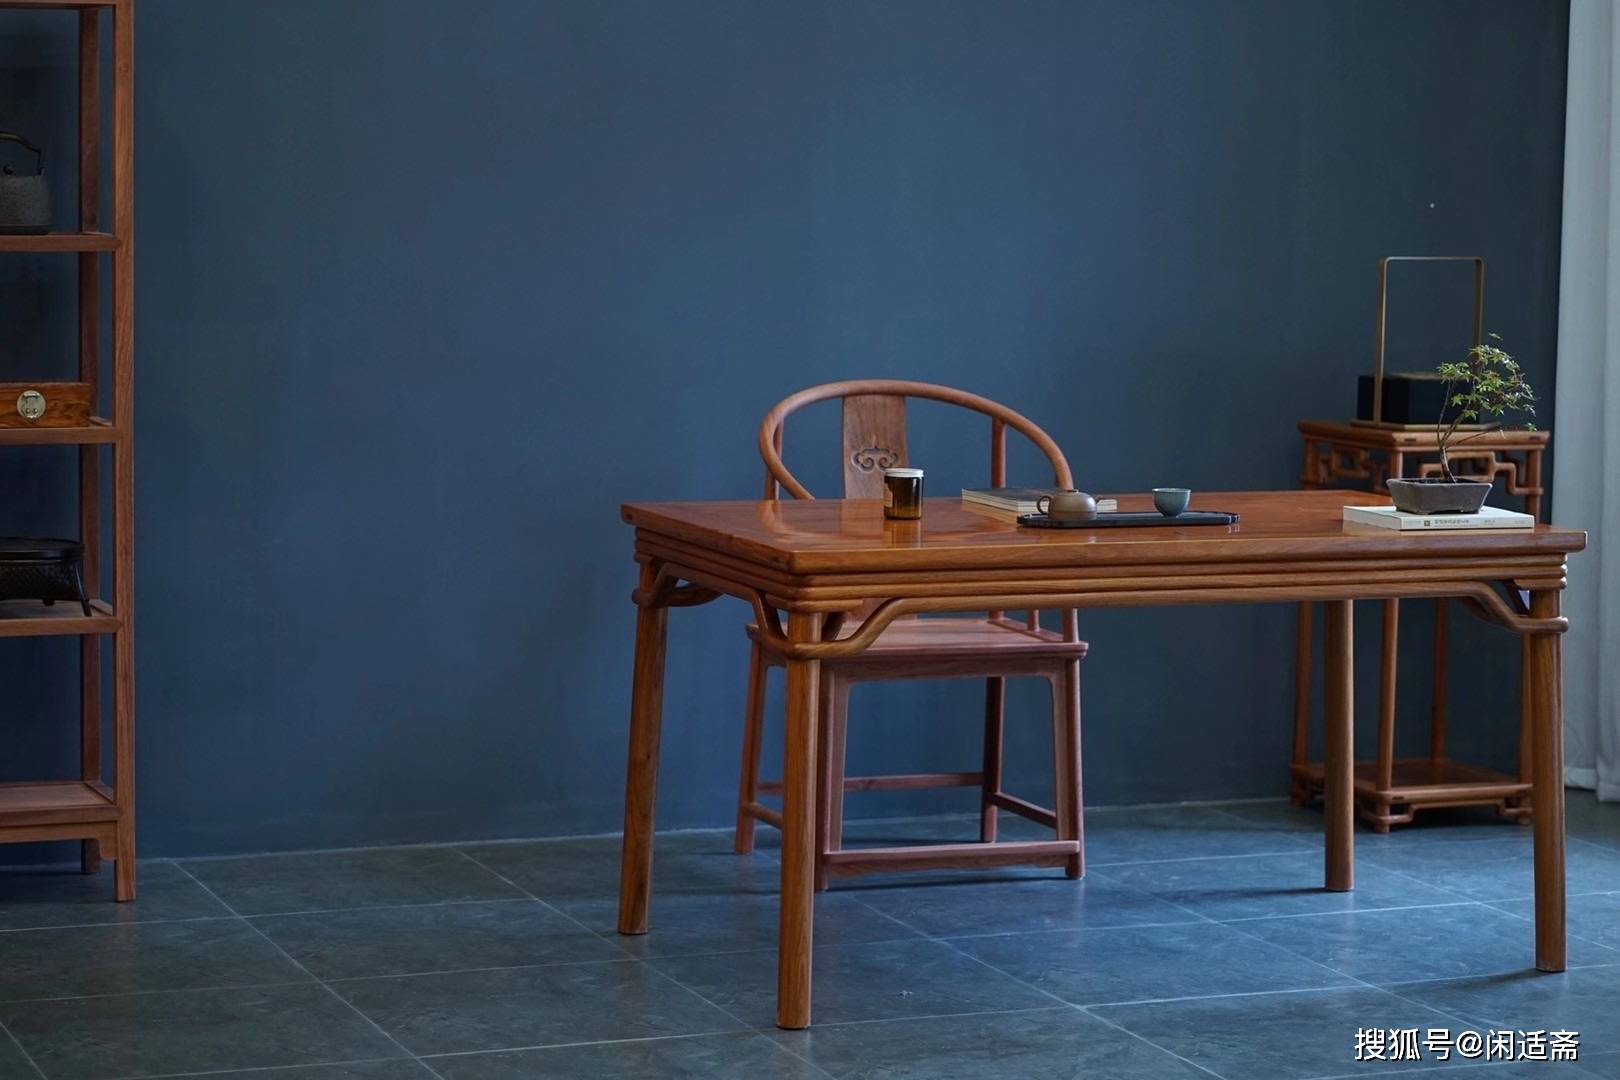 古法工艺双泥面裹腿罗锅枨茶桌明式家具上品之作